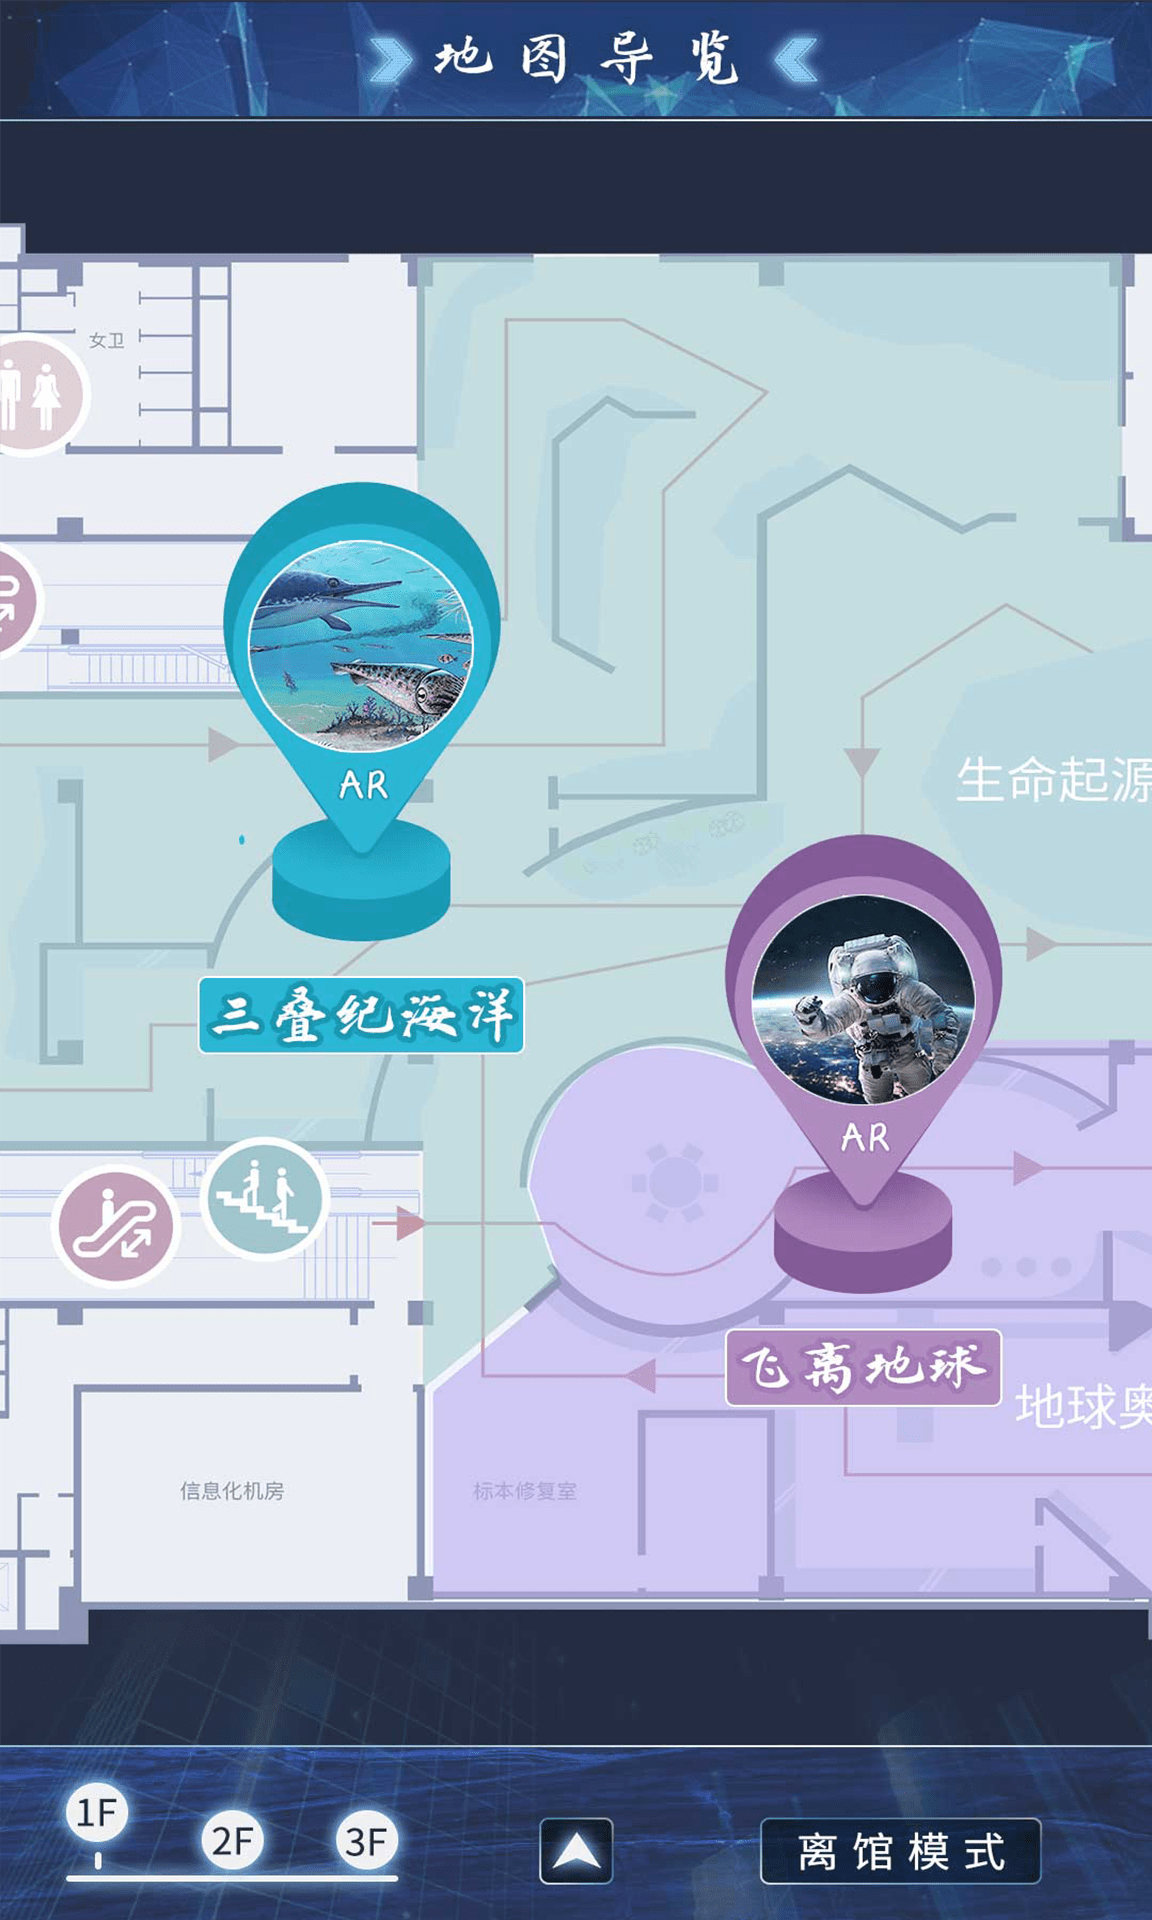 广西自然资源档案博物馆AR互动app官方版图片1